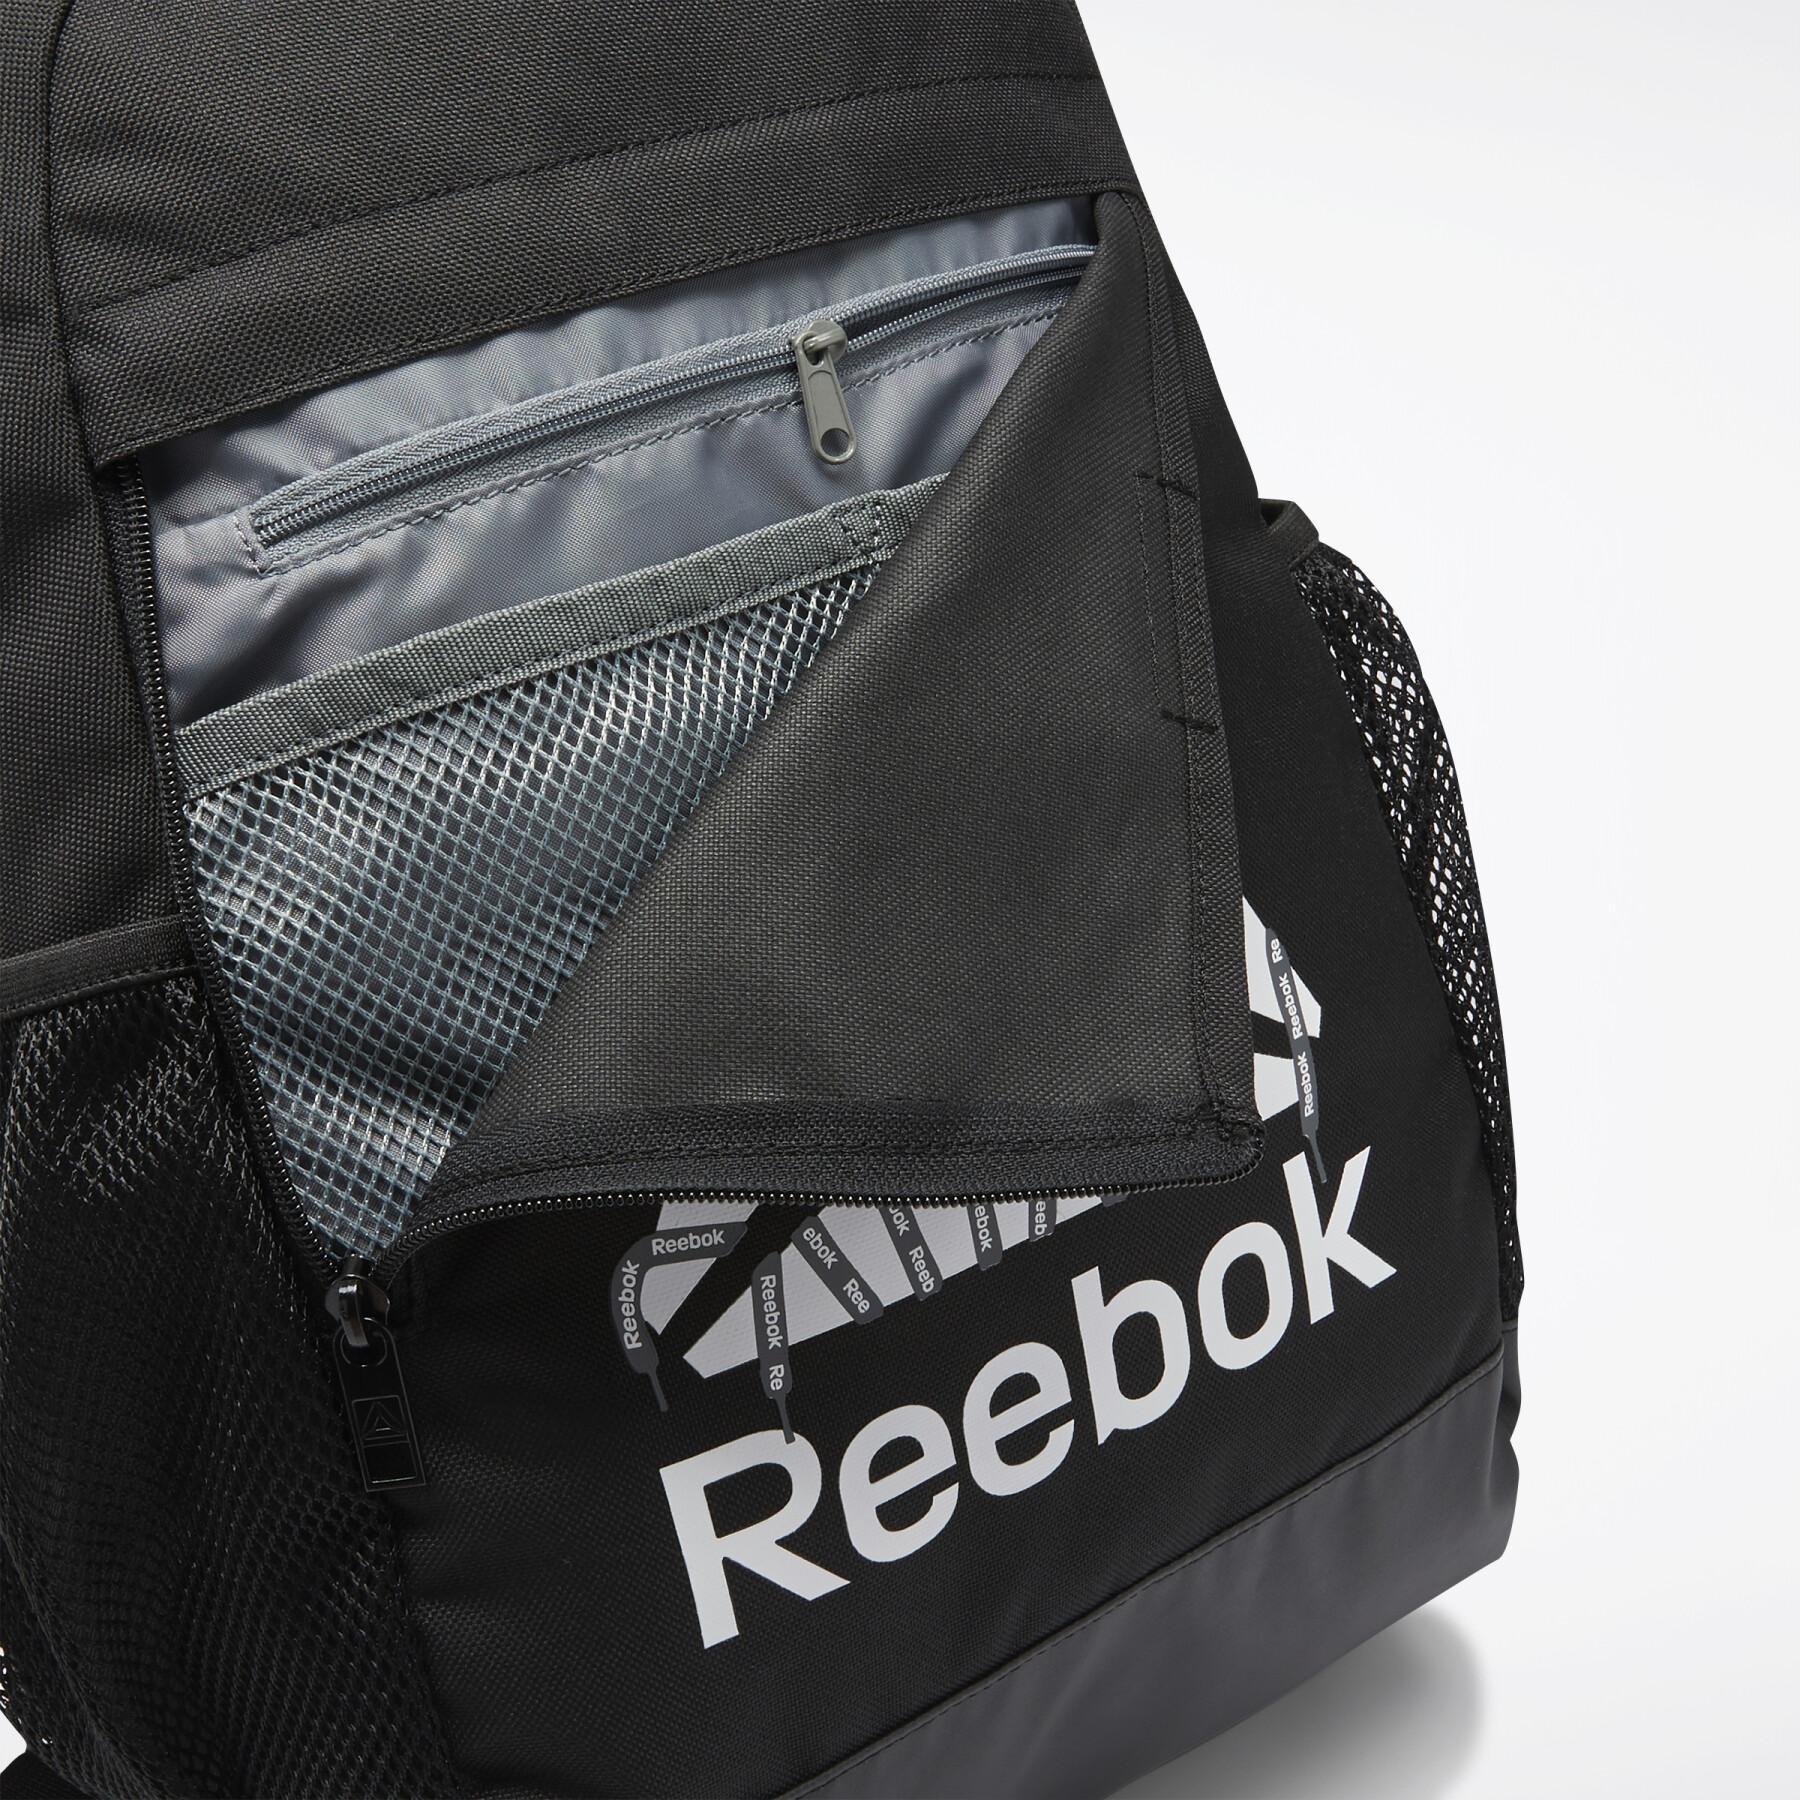 Plecak dla dzieci Reebok Training